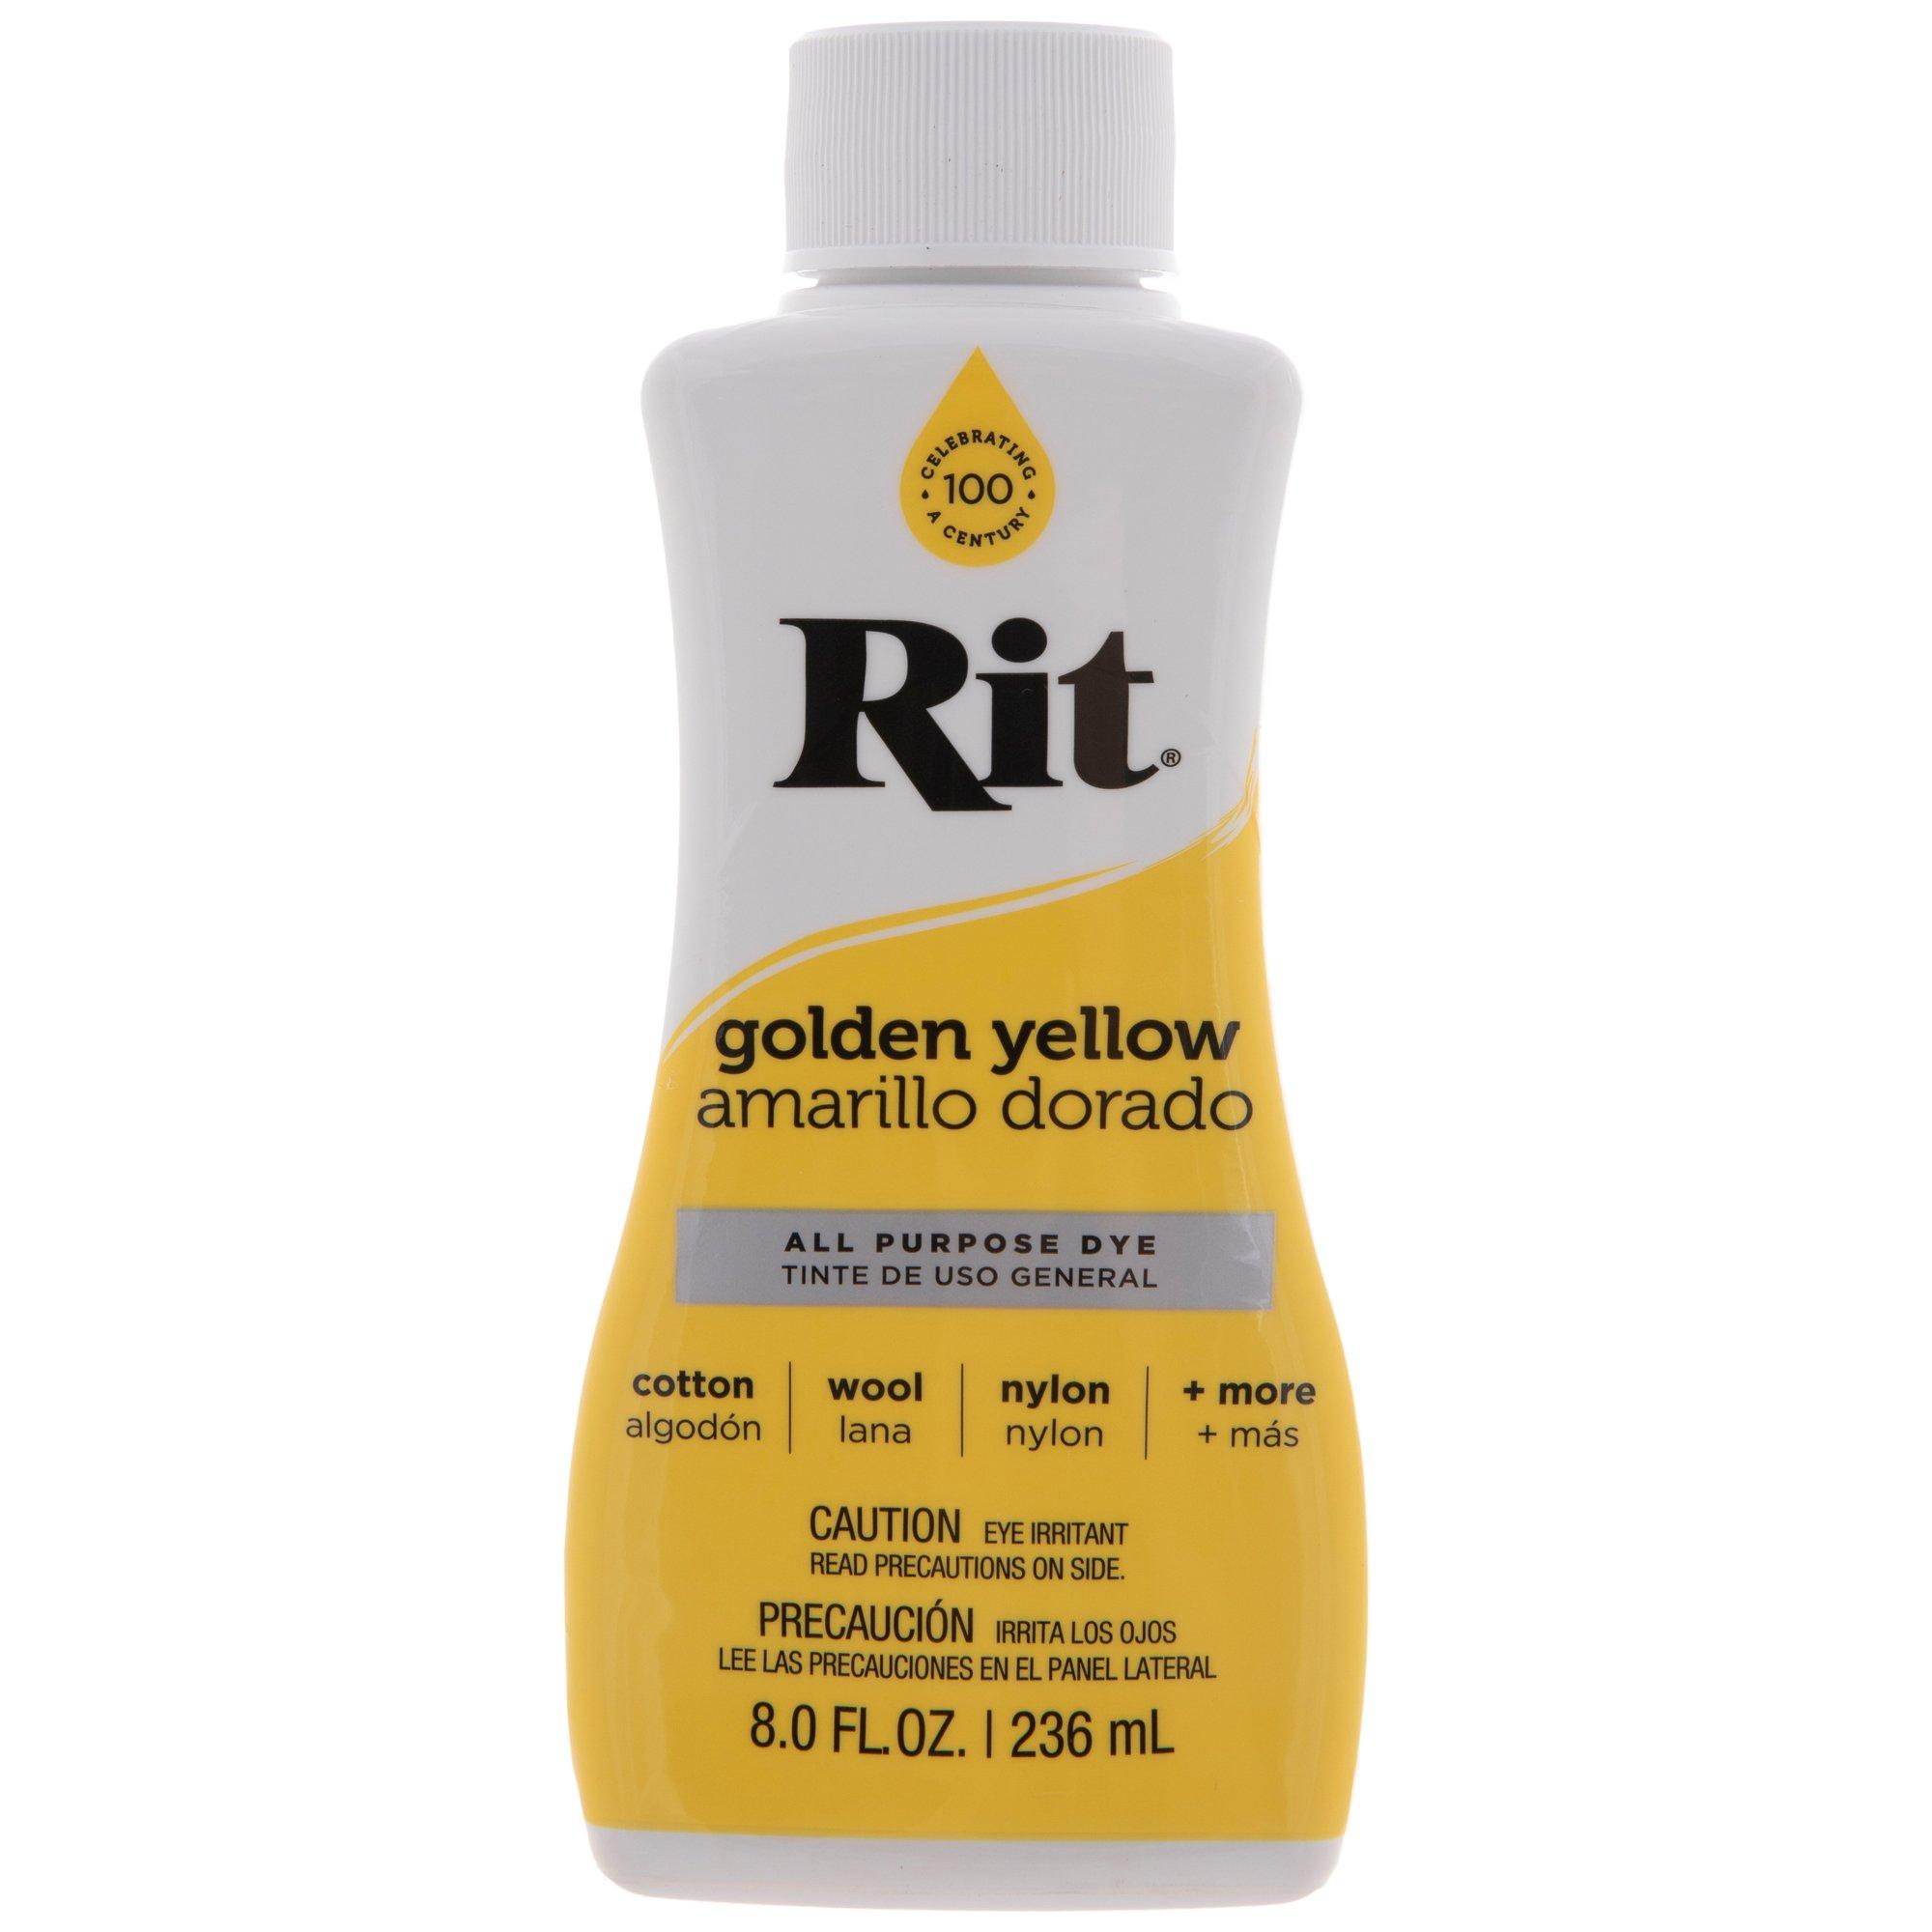 Rit All Purpose Dye, Golden Yellow - 8.0 fl oz